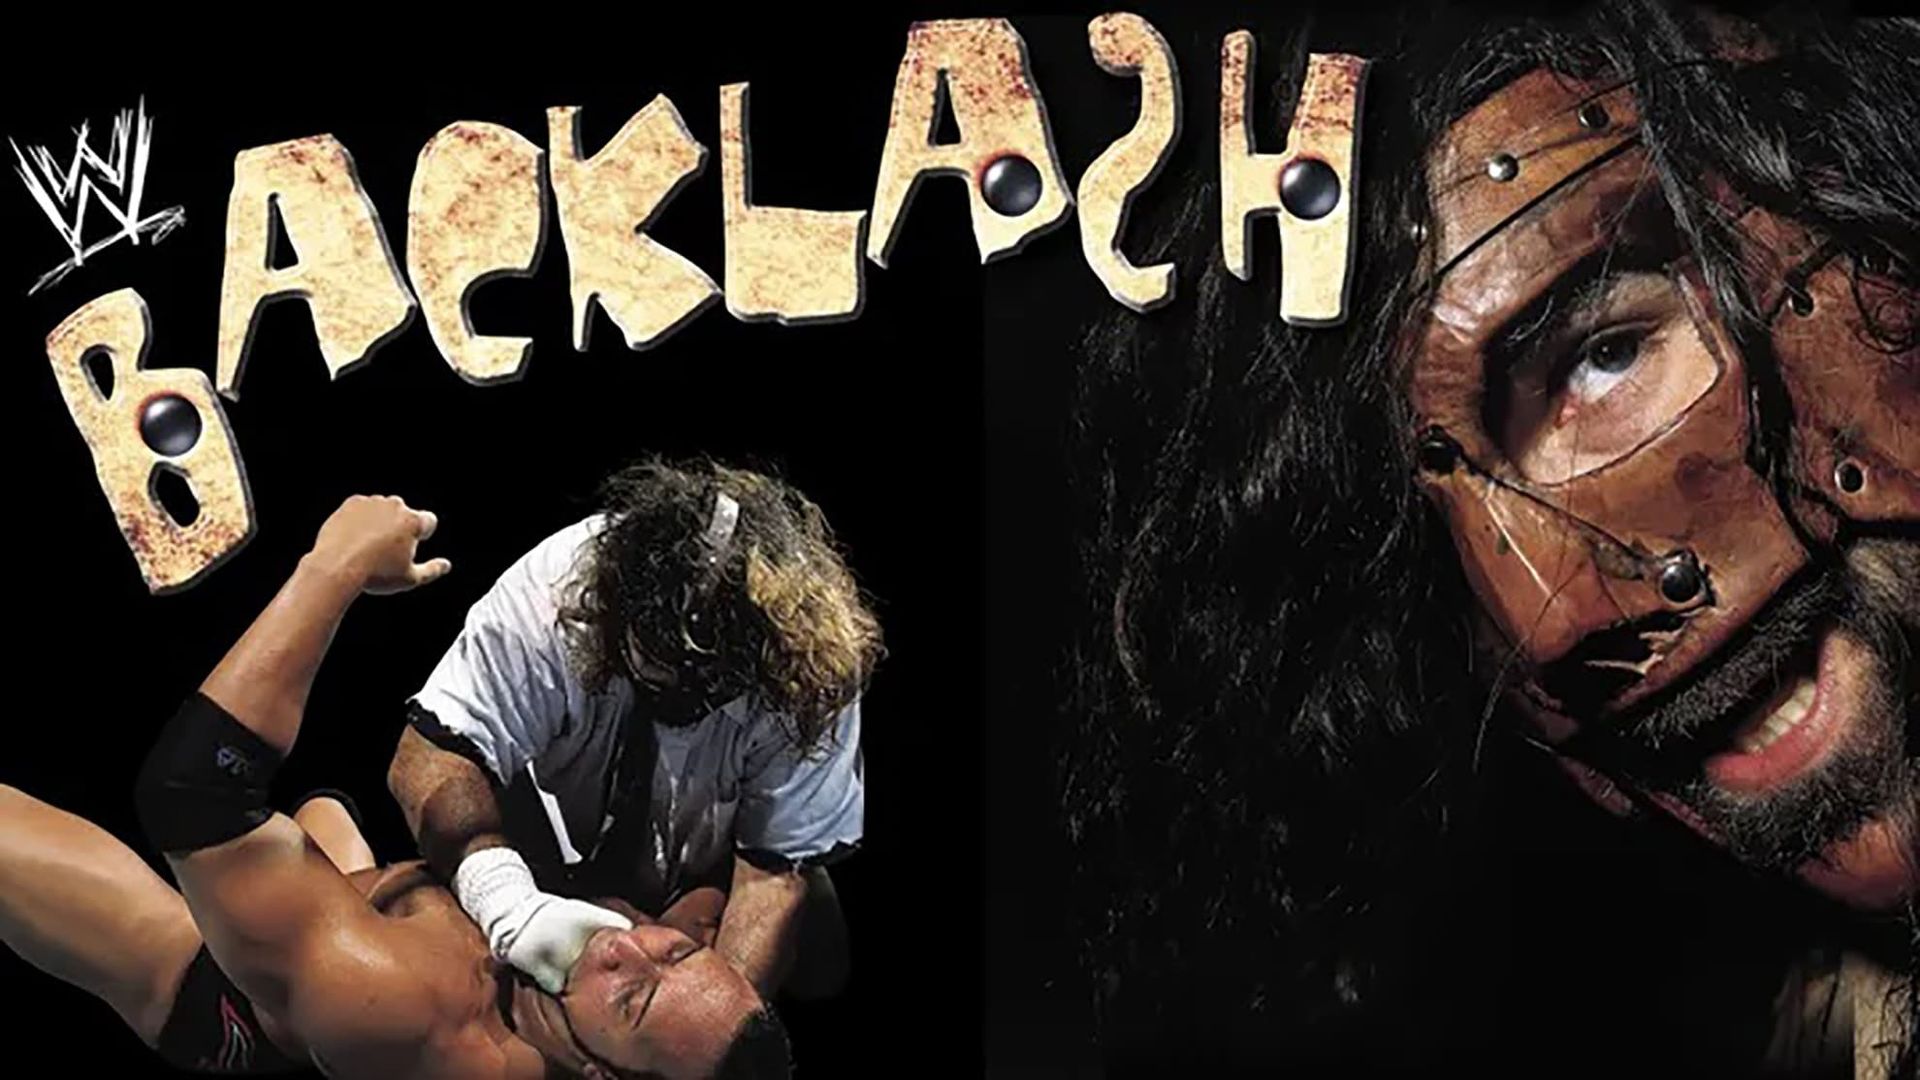 WWF Backlash background